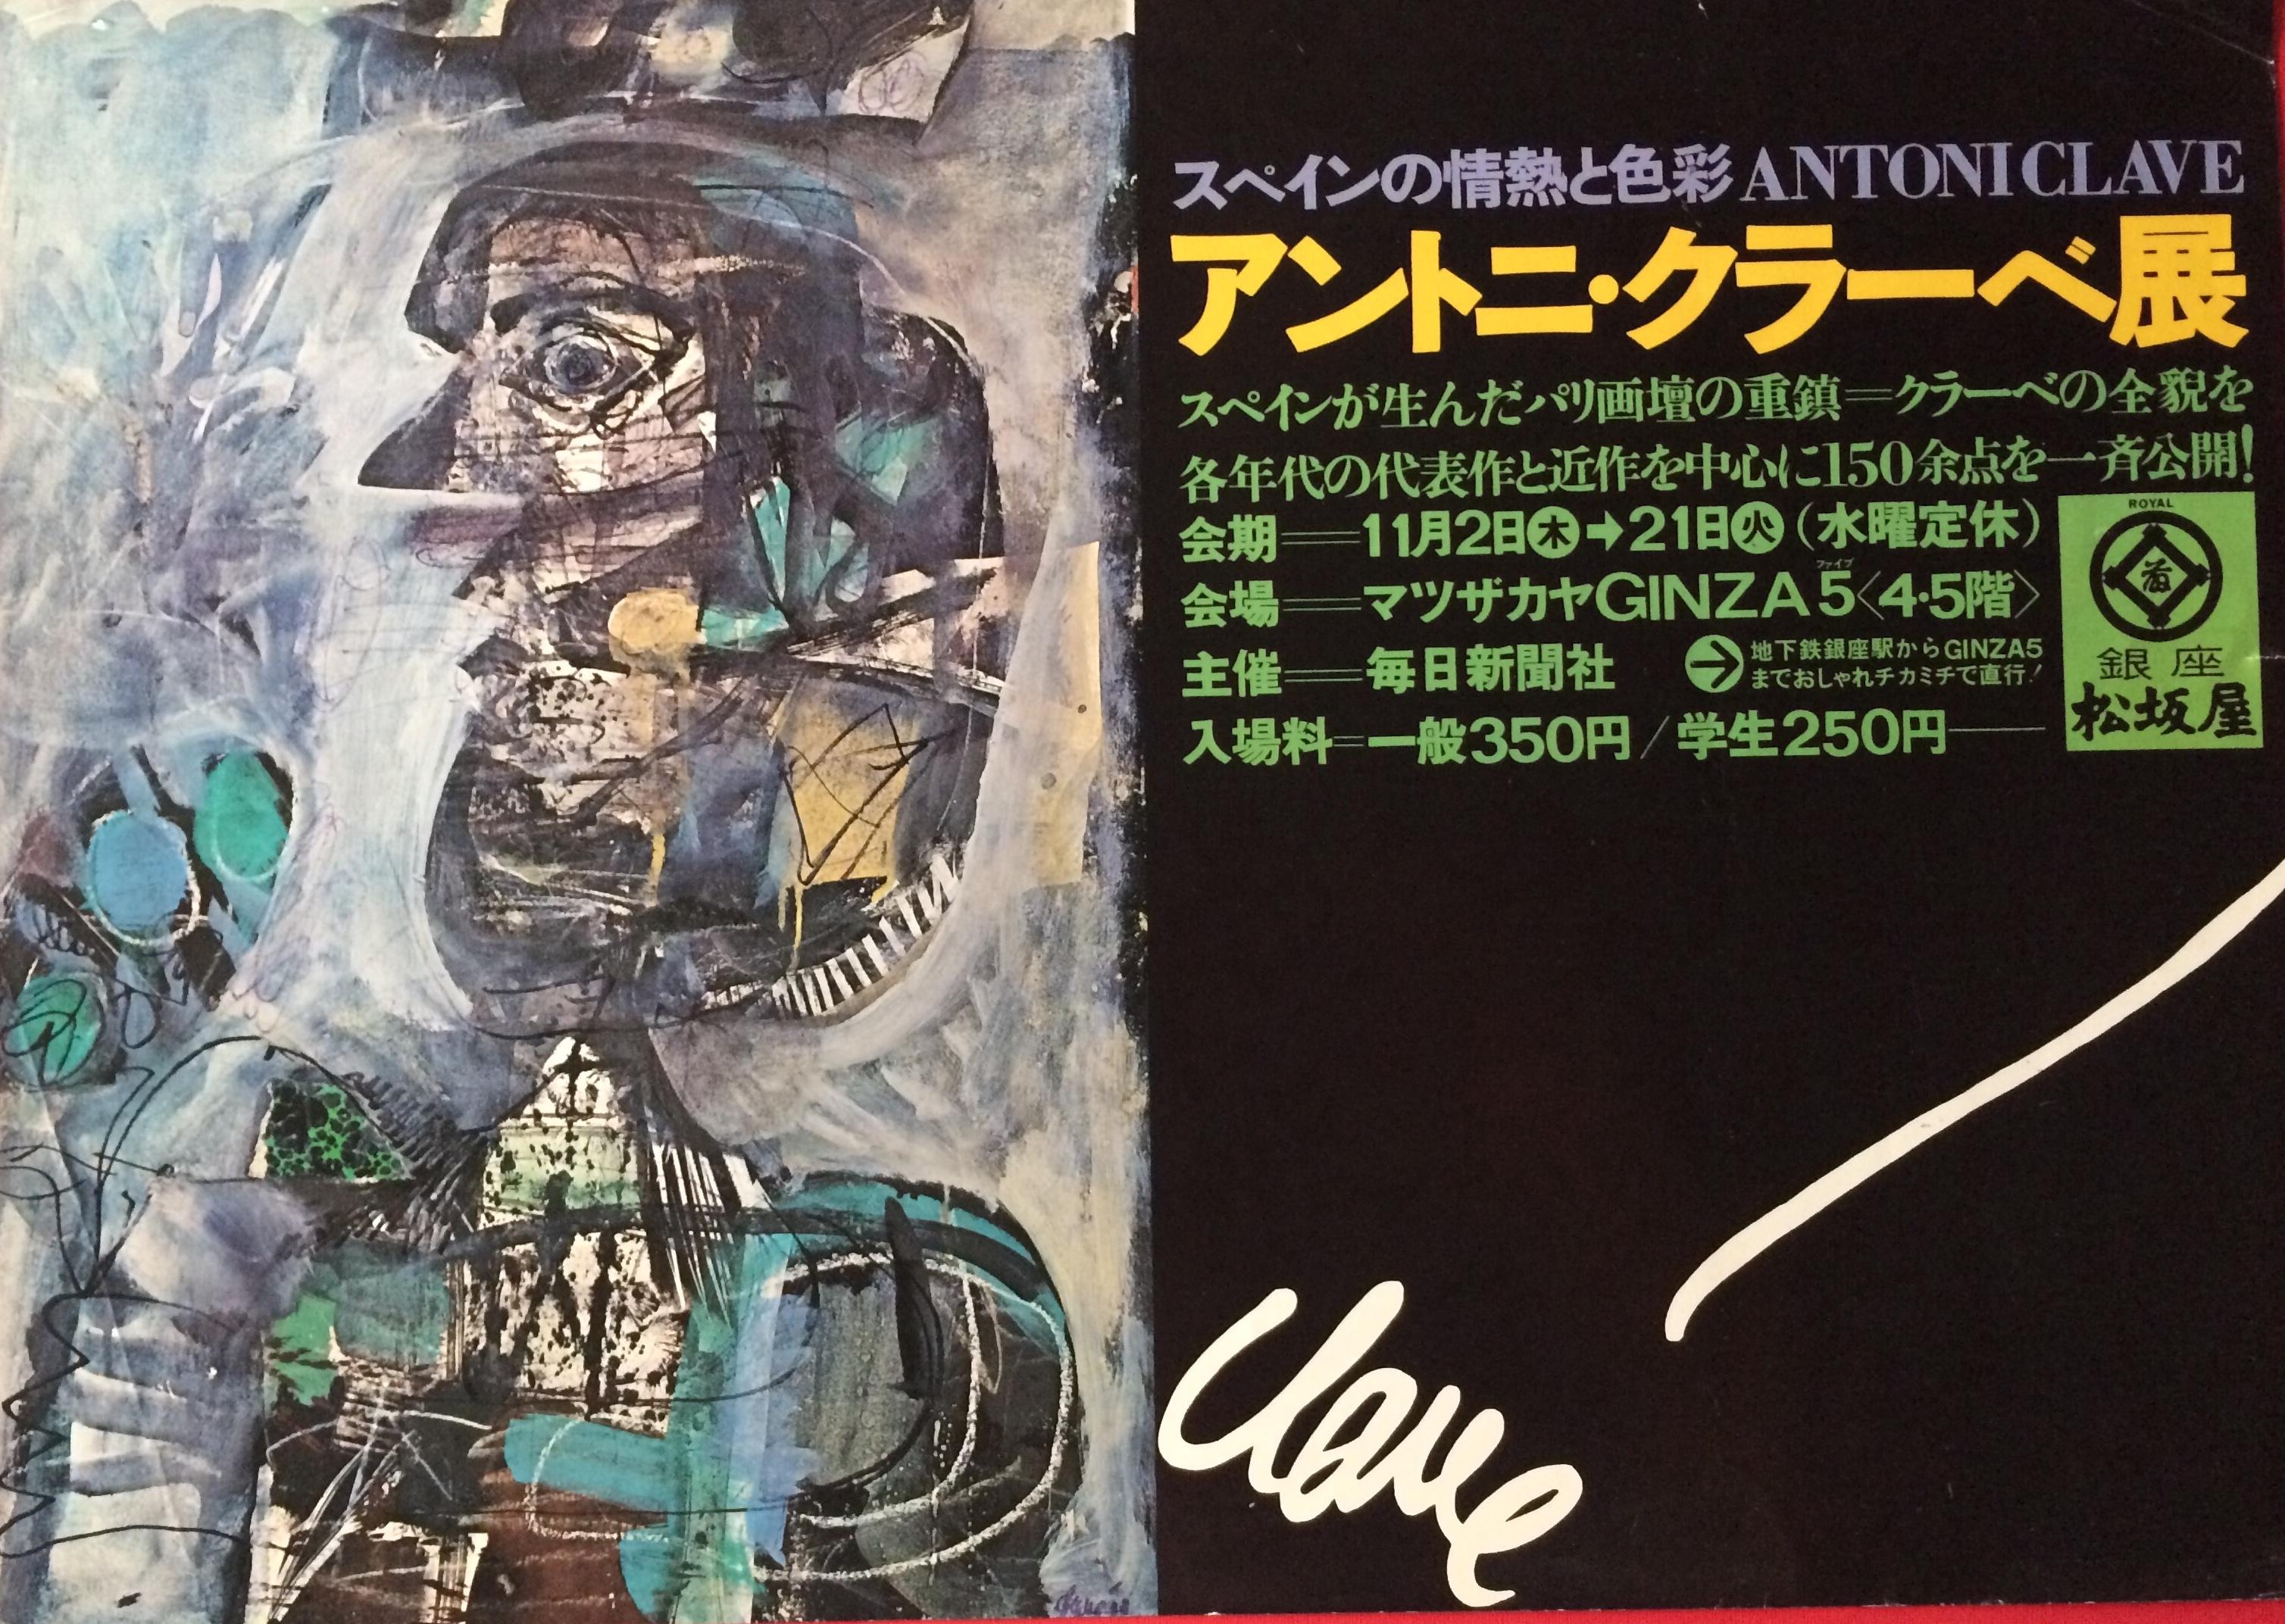 Affiche originale de l'exposition de l'artiste espagnol Antoni Clave à Ginza, au Japon. 

Cette affiche intéressante dépeint clairement une œuvre magnifique de ce brillant artiste. Antoni Clavé (5 avril 1913 - 1er septembre 2005) était un maître